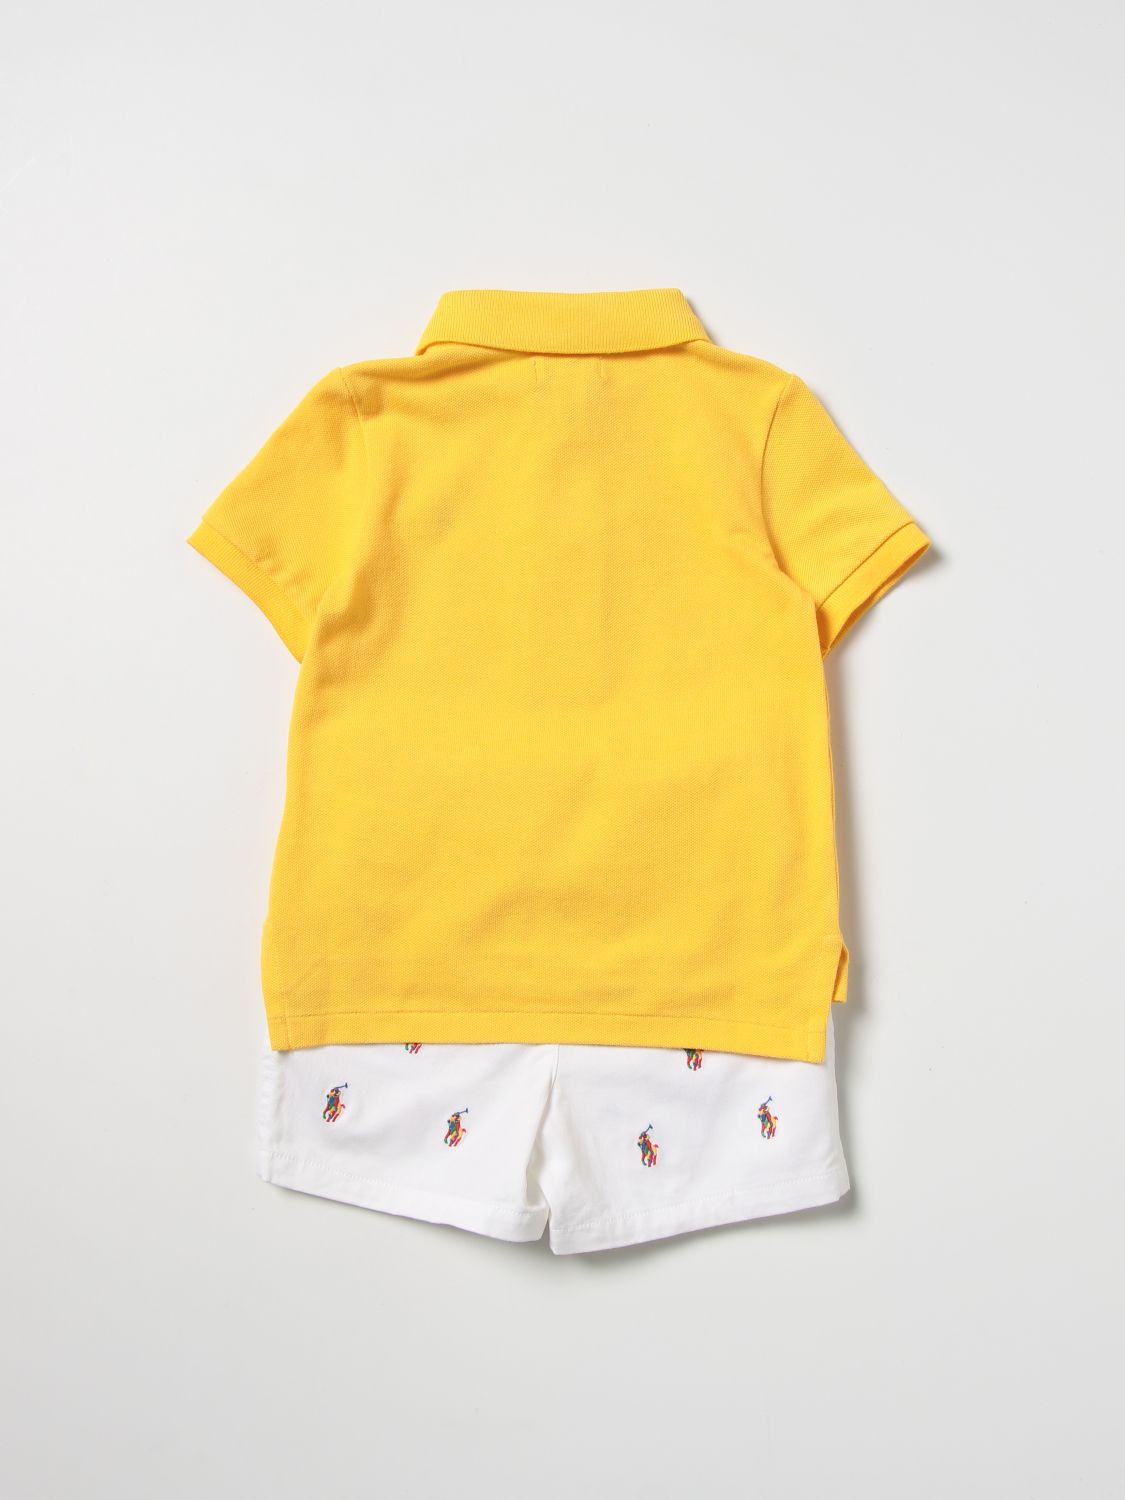 Completo Polo Ralph Lauren: Tuta bambino Polo Ralph Lauren giallo 2